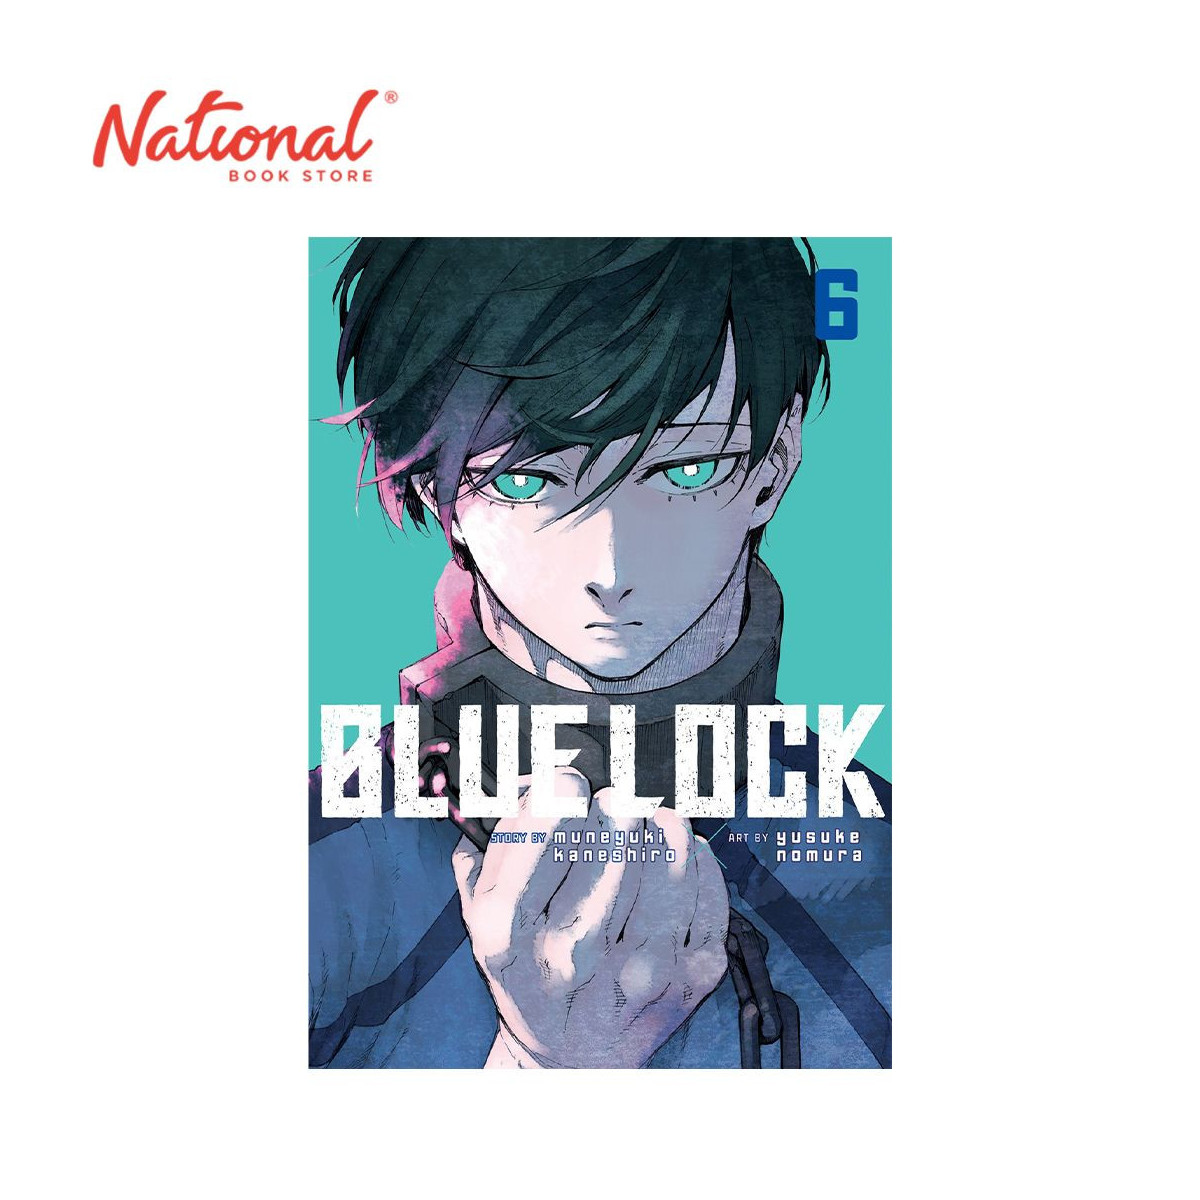 Blue Lock Volume 6 by Muneyuki Kaneshiro - Trade Paperback - Manga - Comics